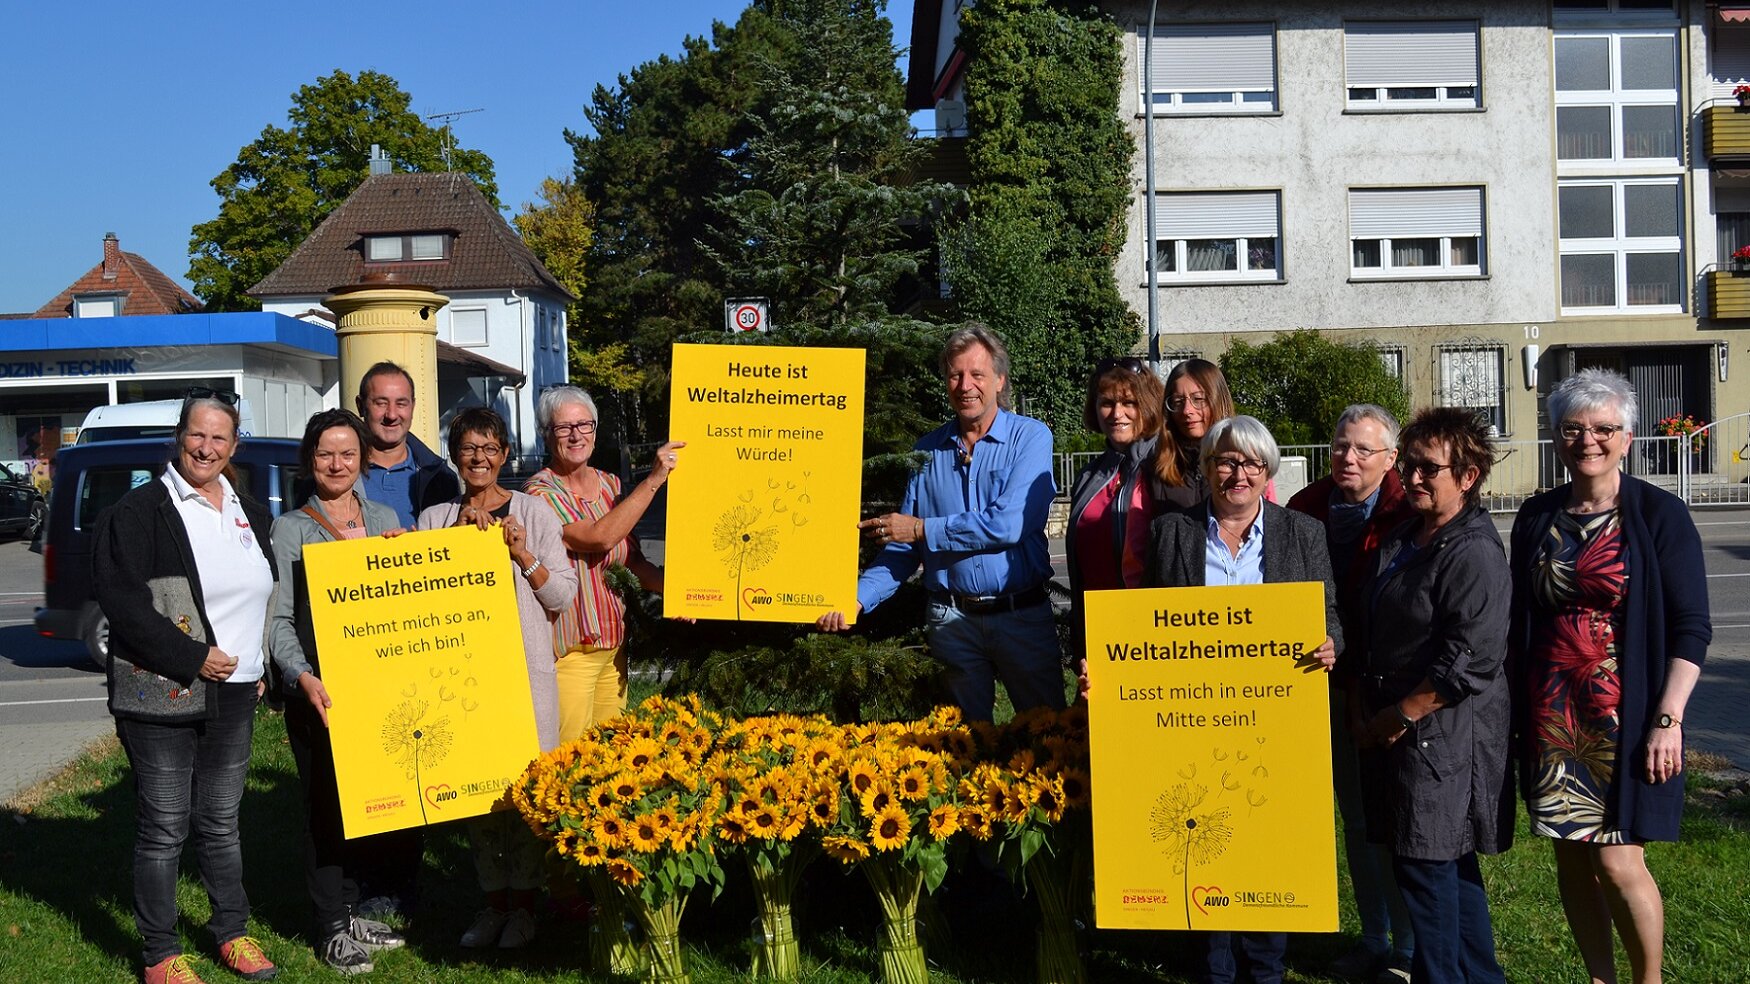 Zu sehen sind die Mitglieder des Aktionsbündnisses Demenz Singen/Hegau, Vasen mit Sonnenblumen und den gelben Plakaten zum Weltalzheimertag